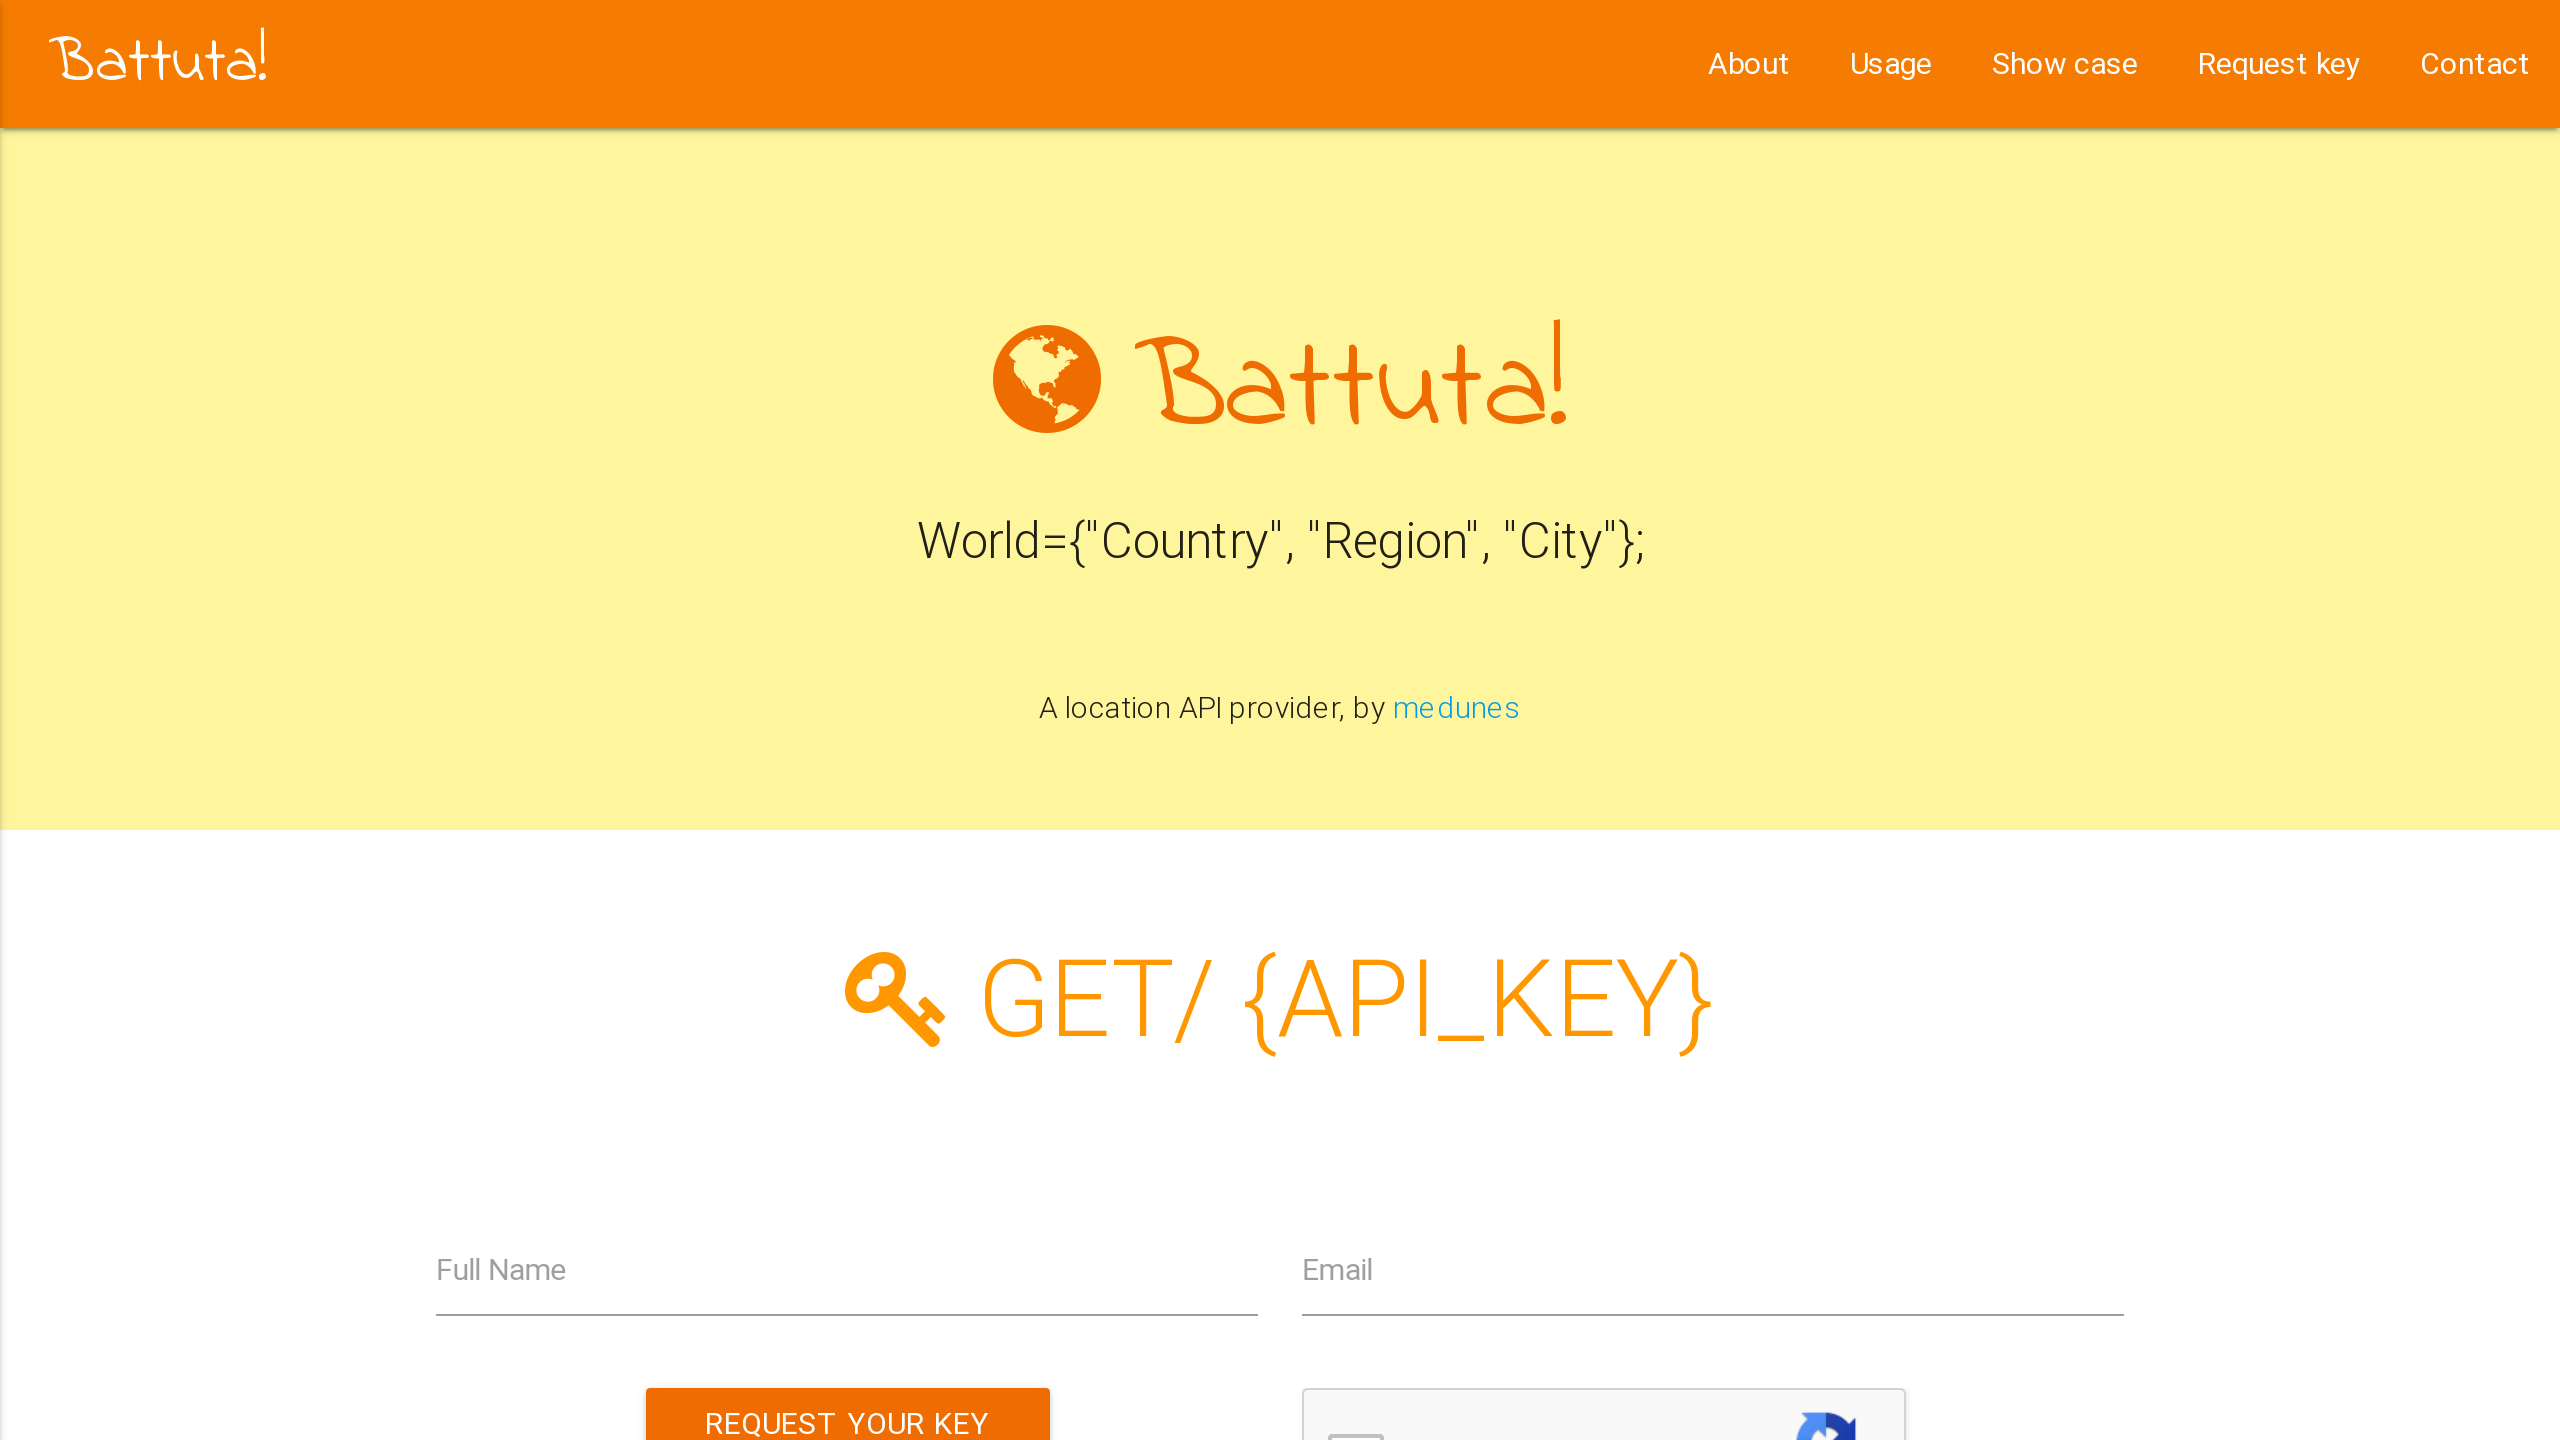 Battuta's website screenshot